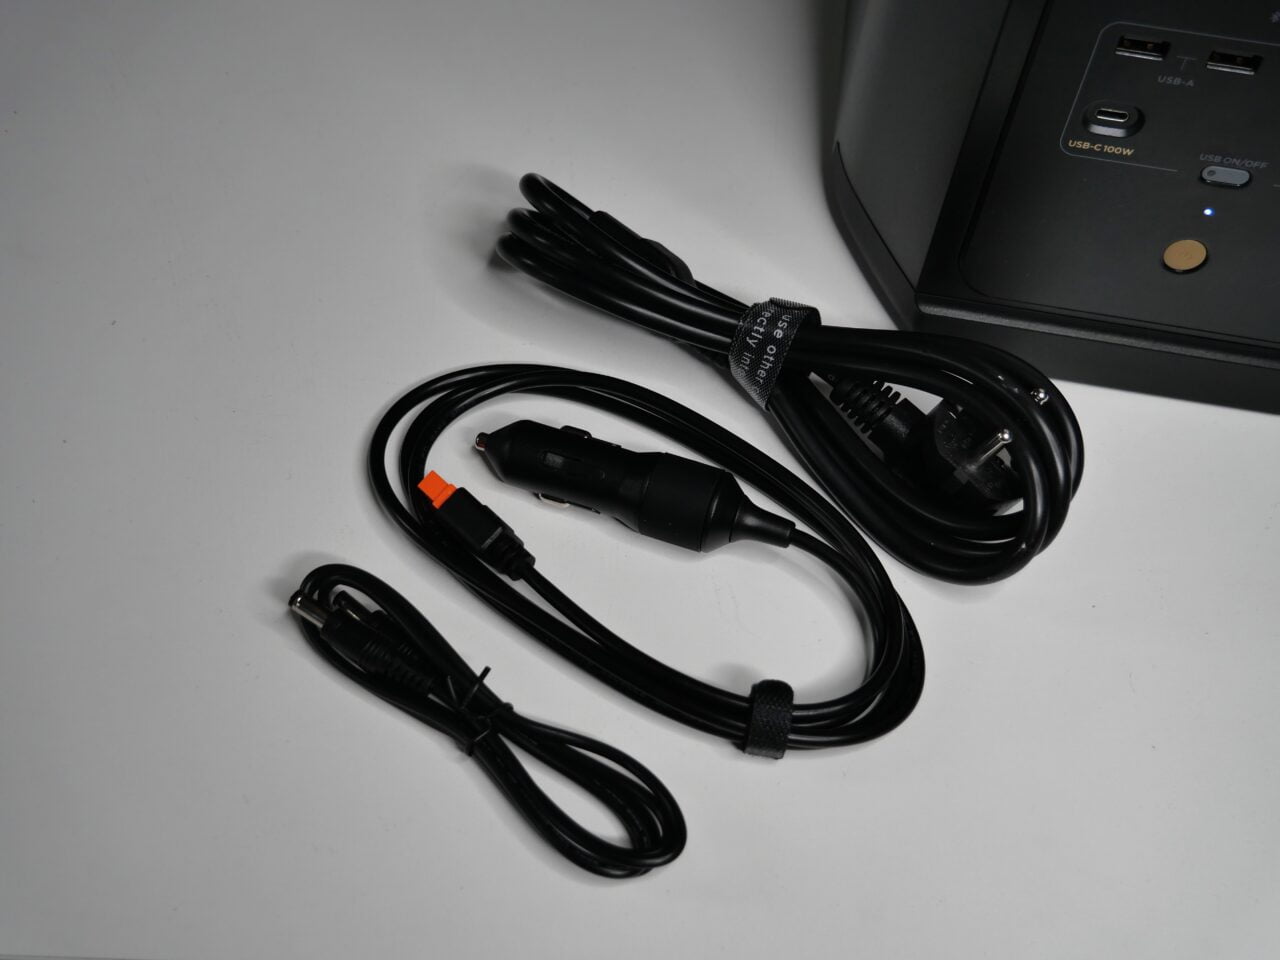 Kable zasilające na białym tle obok częściowo widocznego UPS-a ze złączami USB i prądem zmiennym.